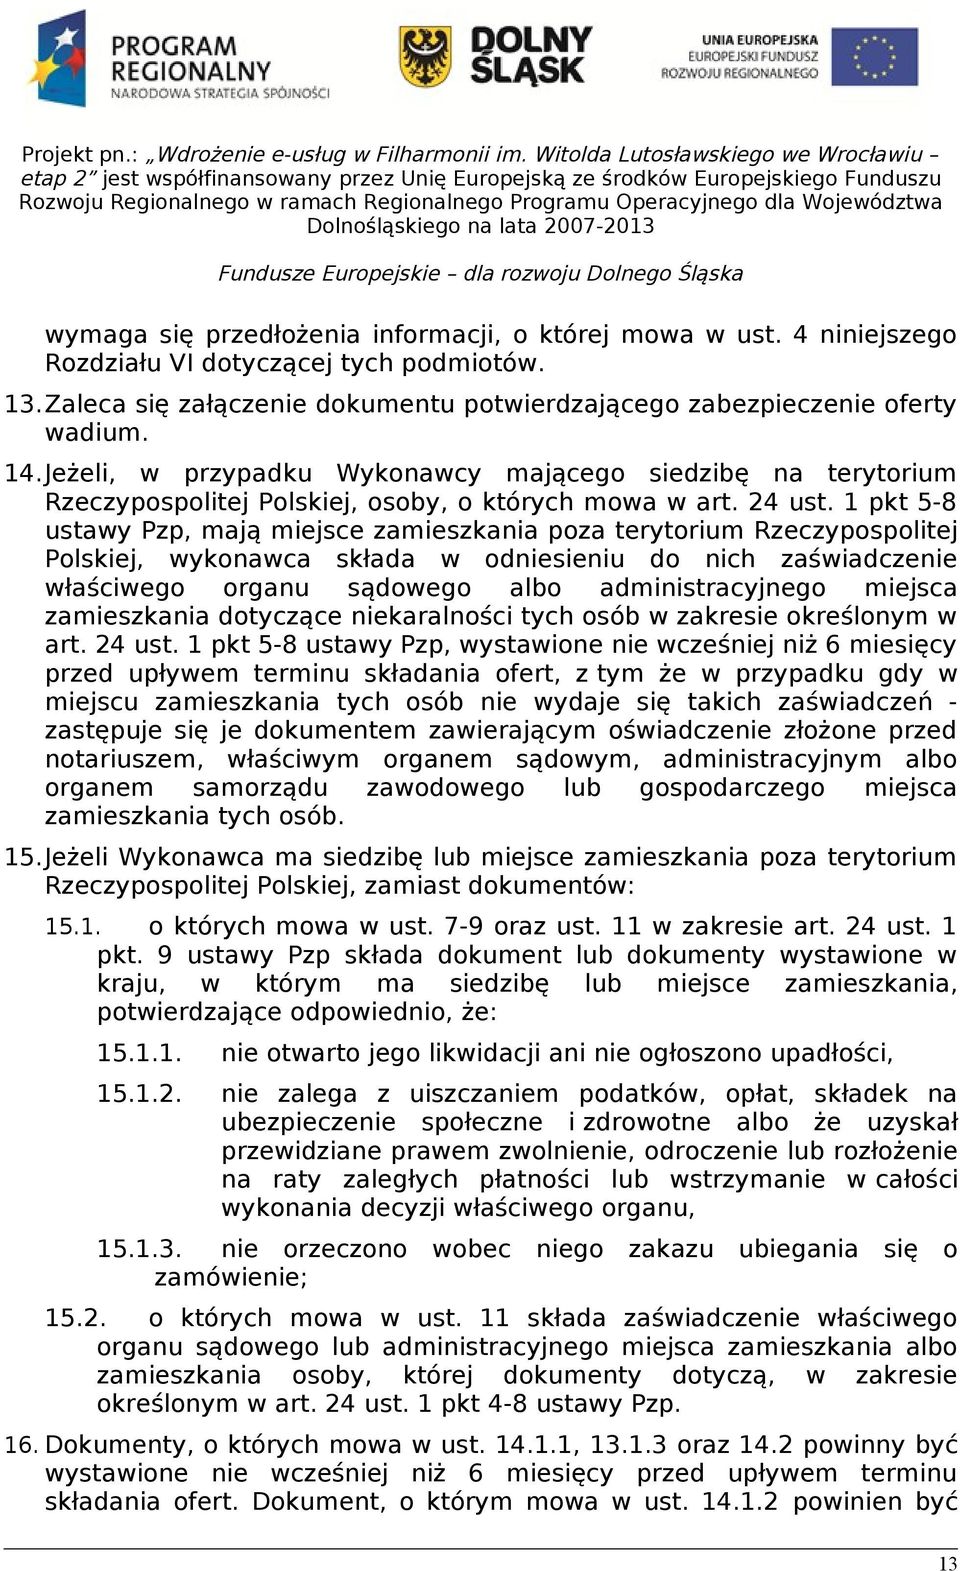 1 pkt 5-8 ustawy Pzp, mają miejsce zamieszkania poza terytorium Rzeczypospolitej Polskiej, wykonawca składa w odniesieniu do nich zaświadczenie właściwego organu sądowego albo administracyjnego